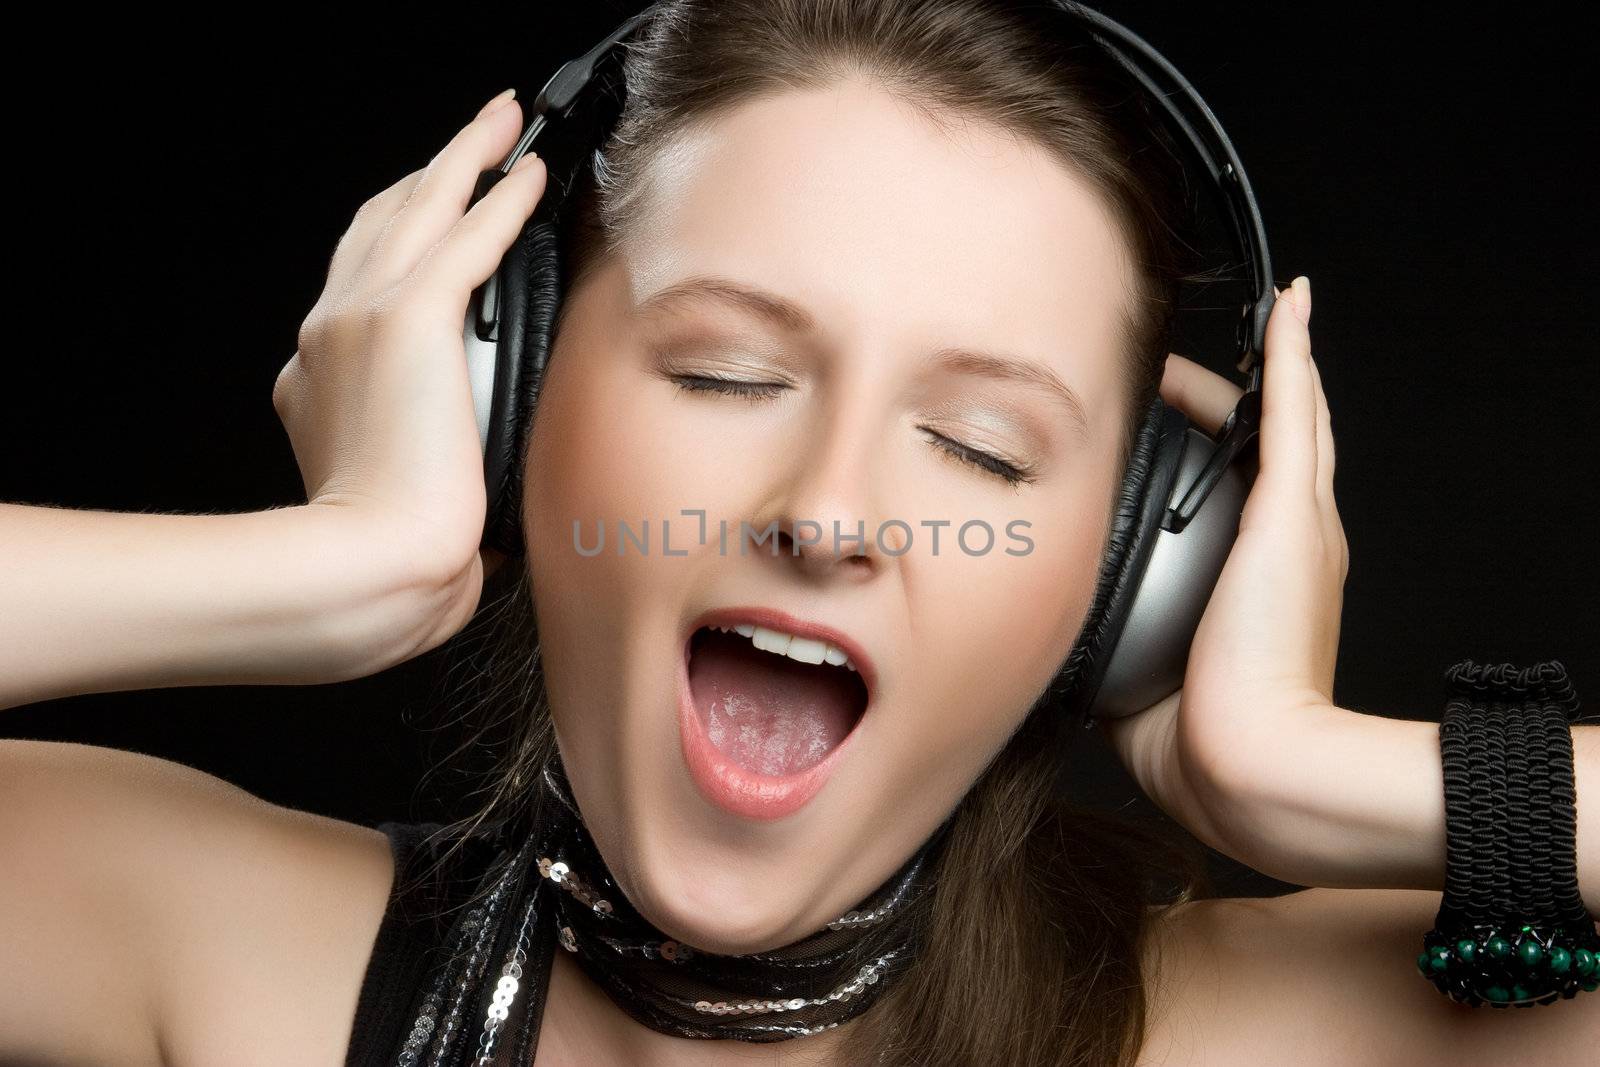 Singing Headphones Woman by keeweeboy